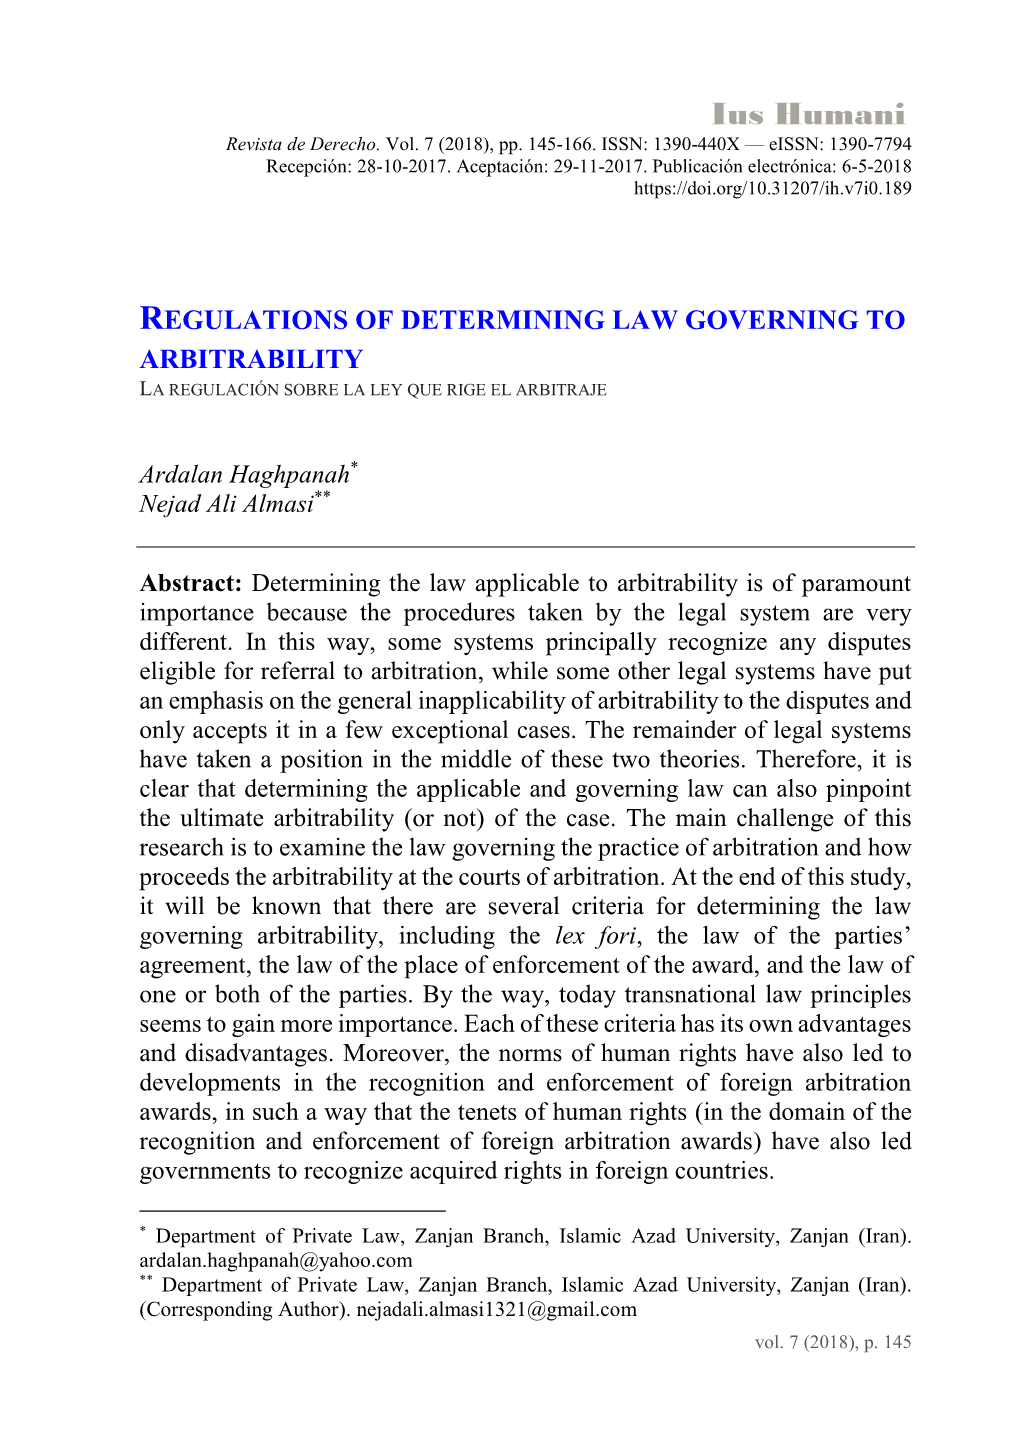 Regulations of Determining Law Governing to Arbitrability La Regulación Sobre La Ley Que Rige El Arbitraje